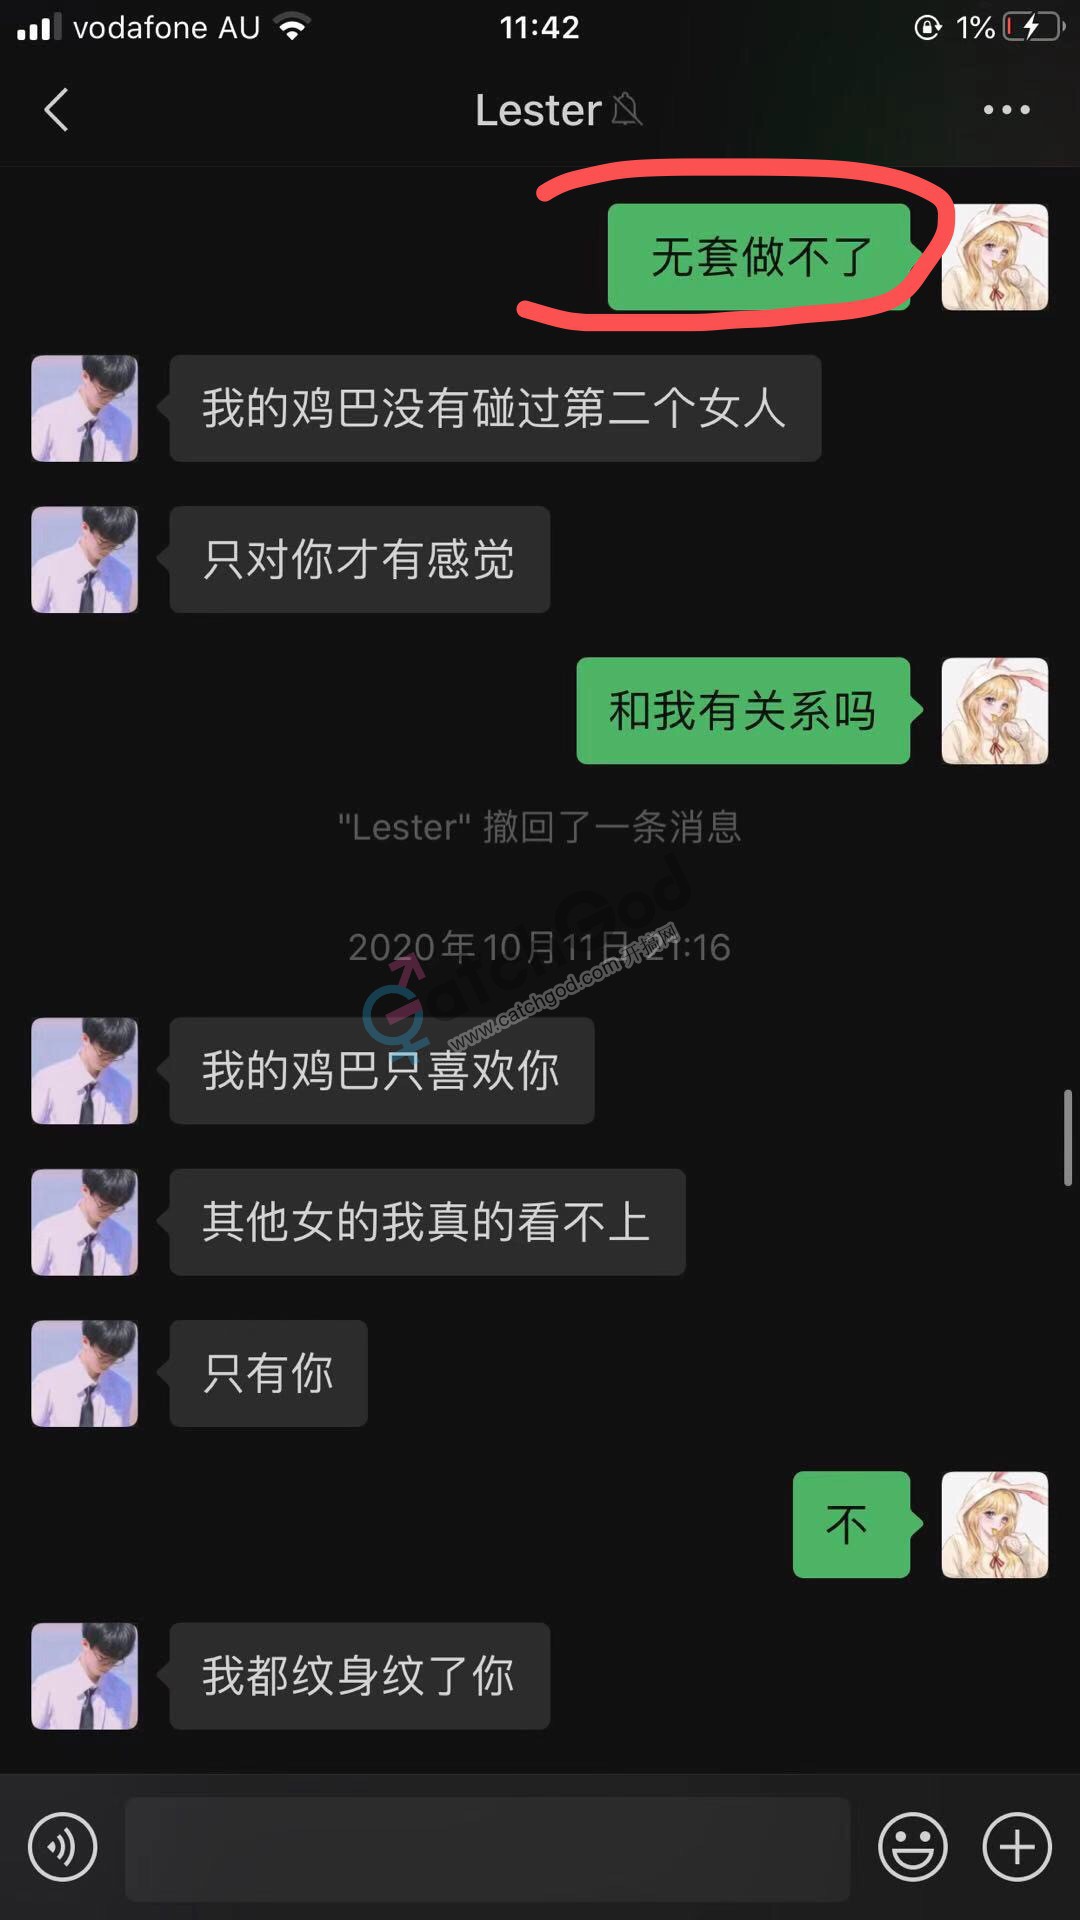 WeChat Image_20201123110928.jpg